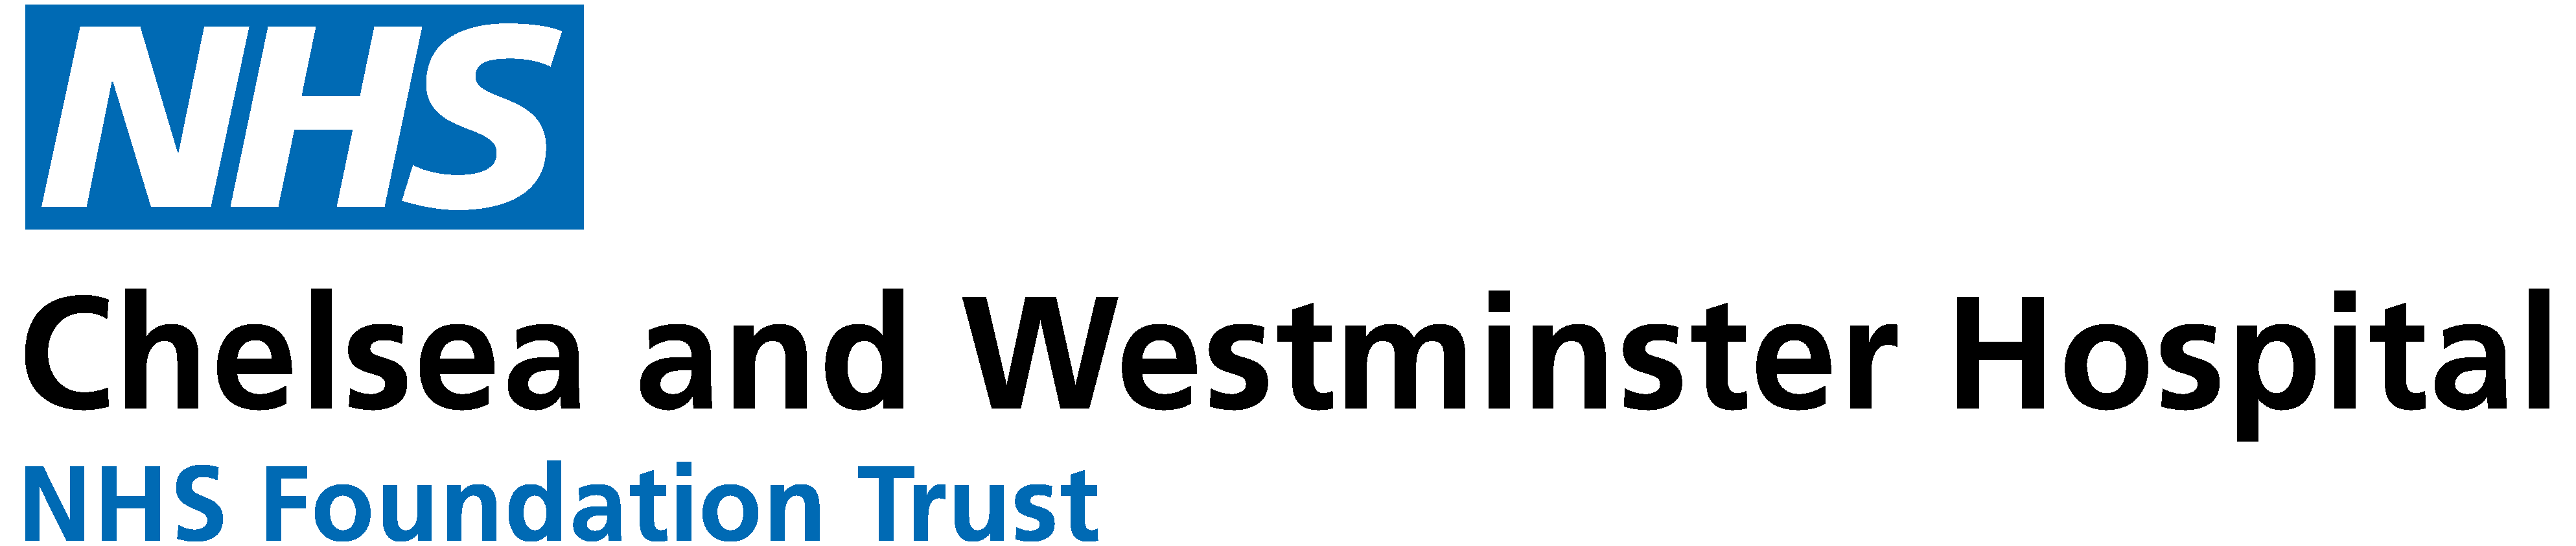 Westminster Logo - CW logo left